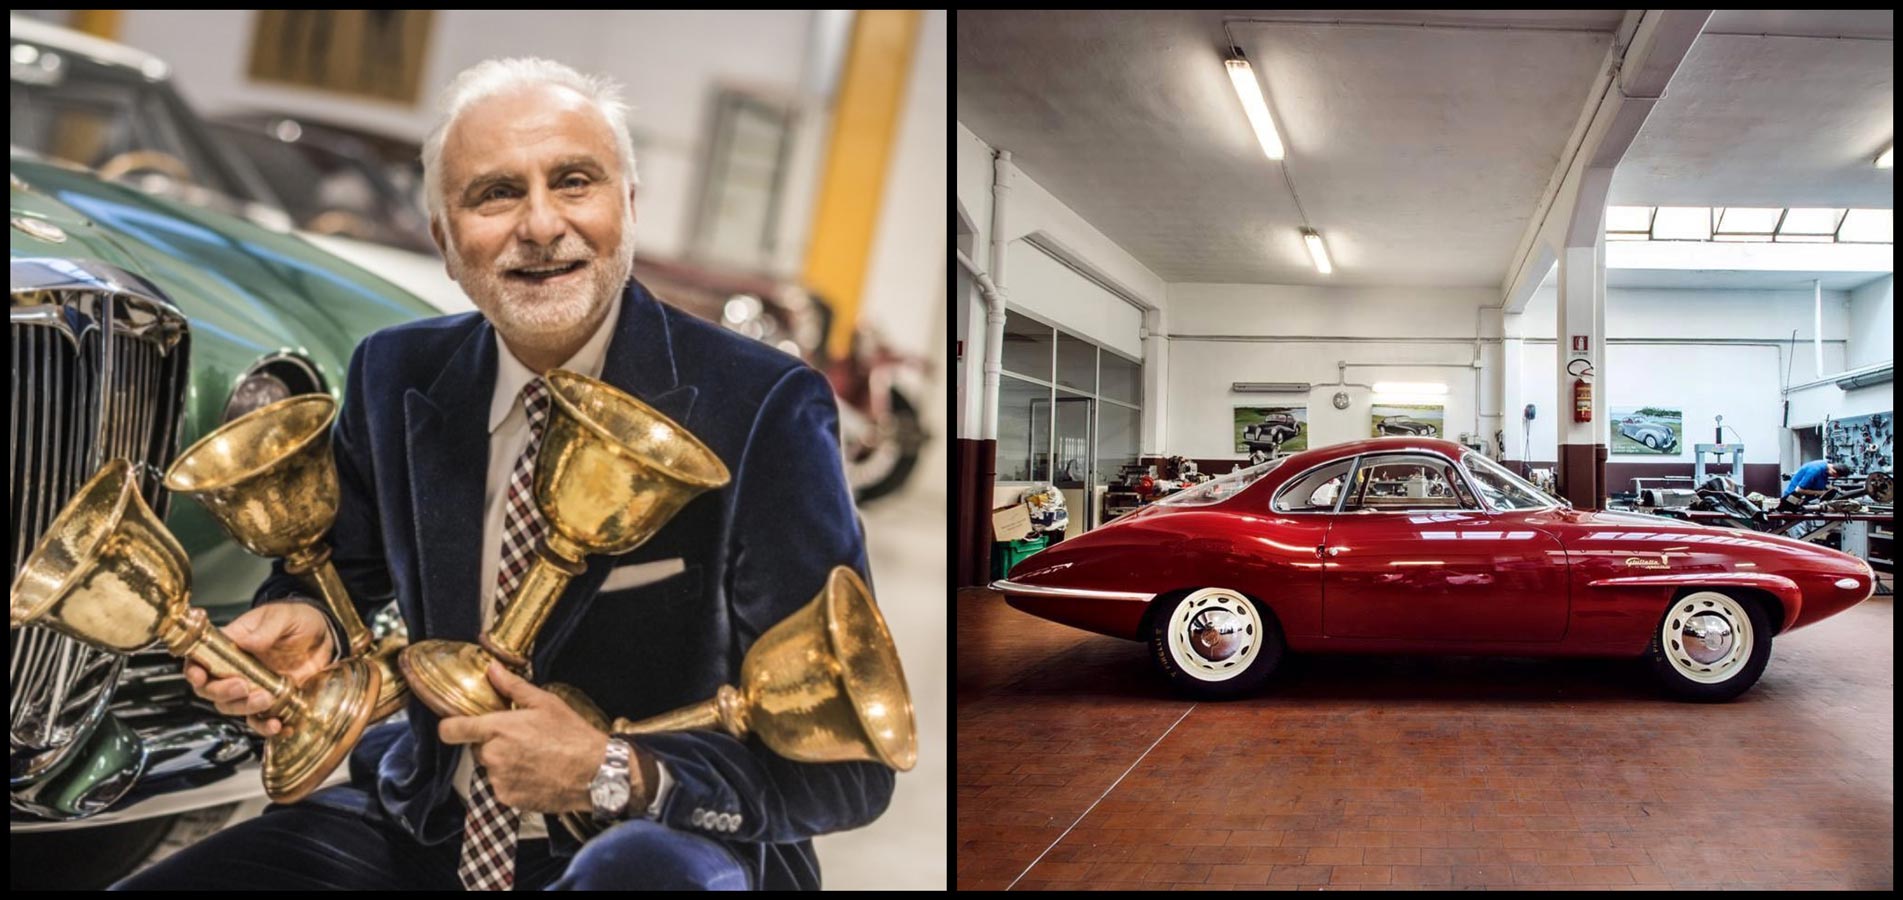 Αποκλειστικό: Ο Corrado Lopresto, ο πιο διάσημος Ιταλός συλλέκτης, αποκαλύπτει τα πανάκριβα αυτοκίνητά του